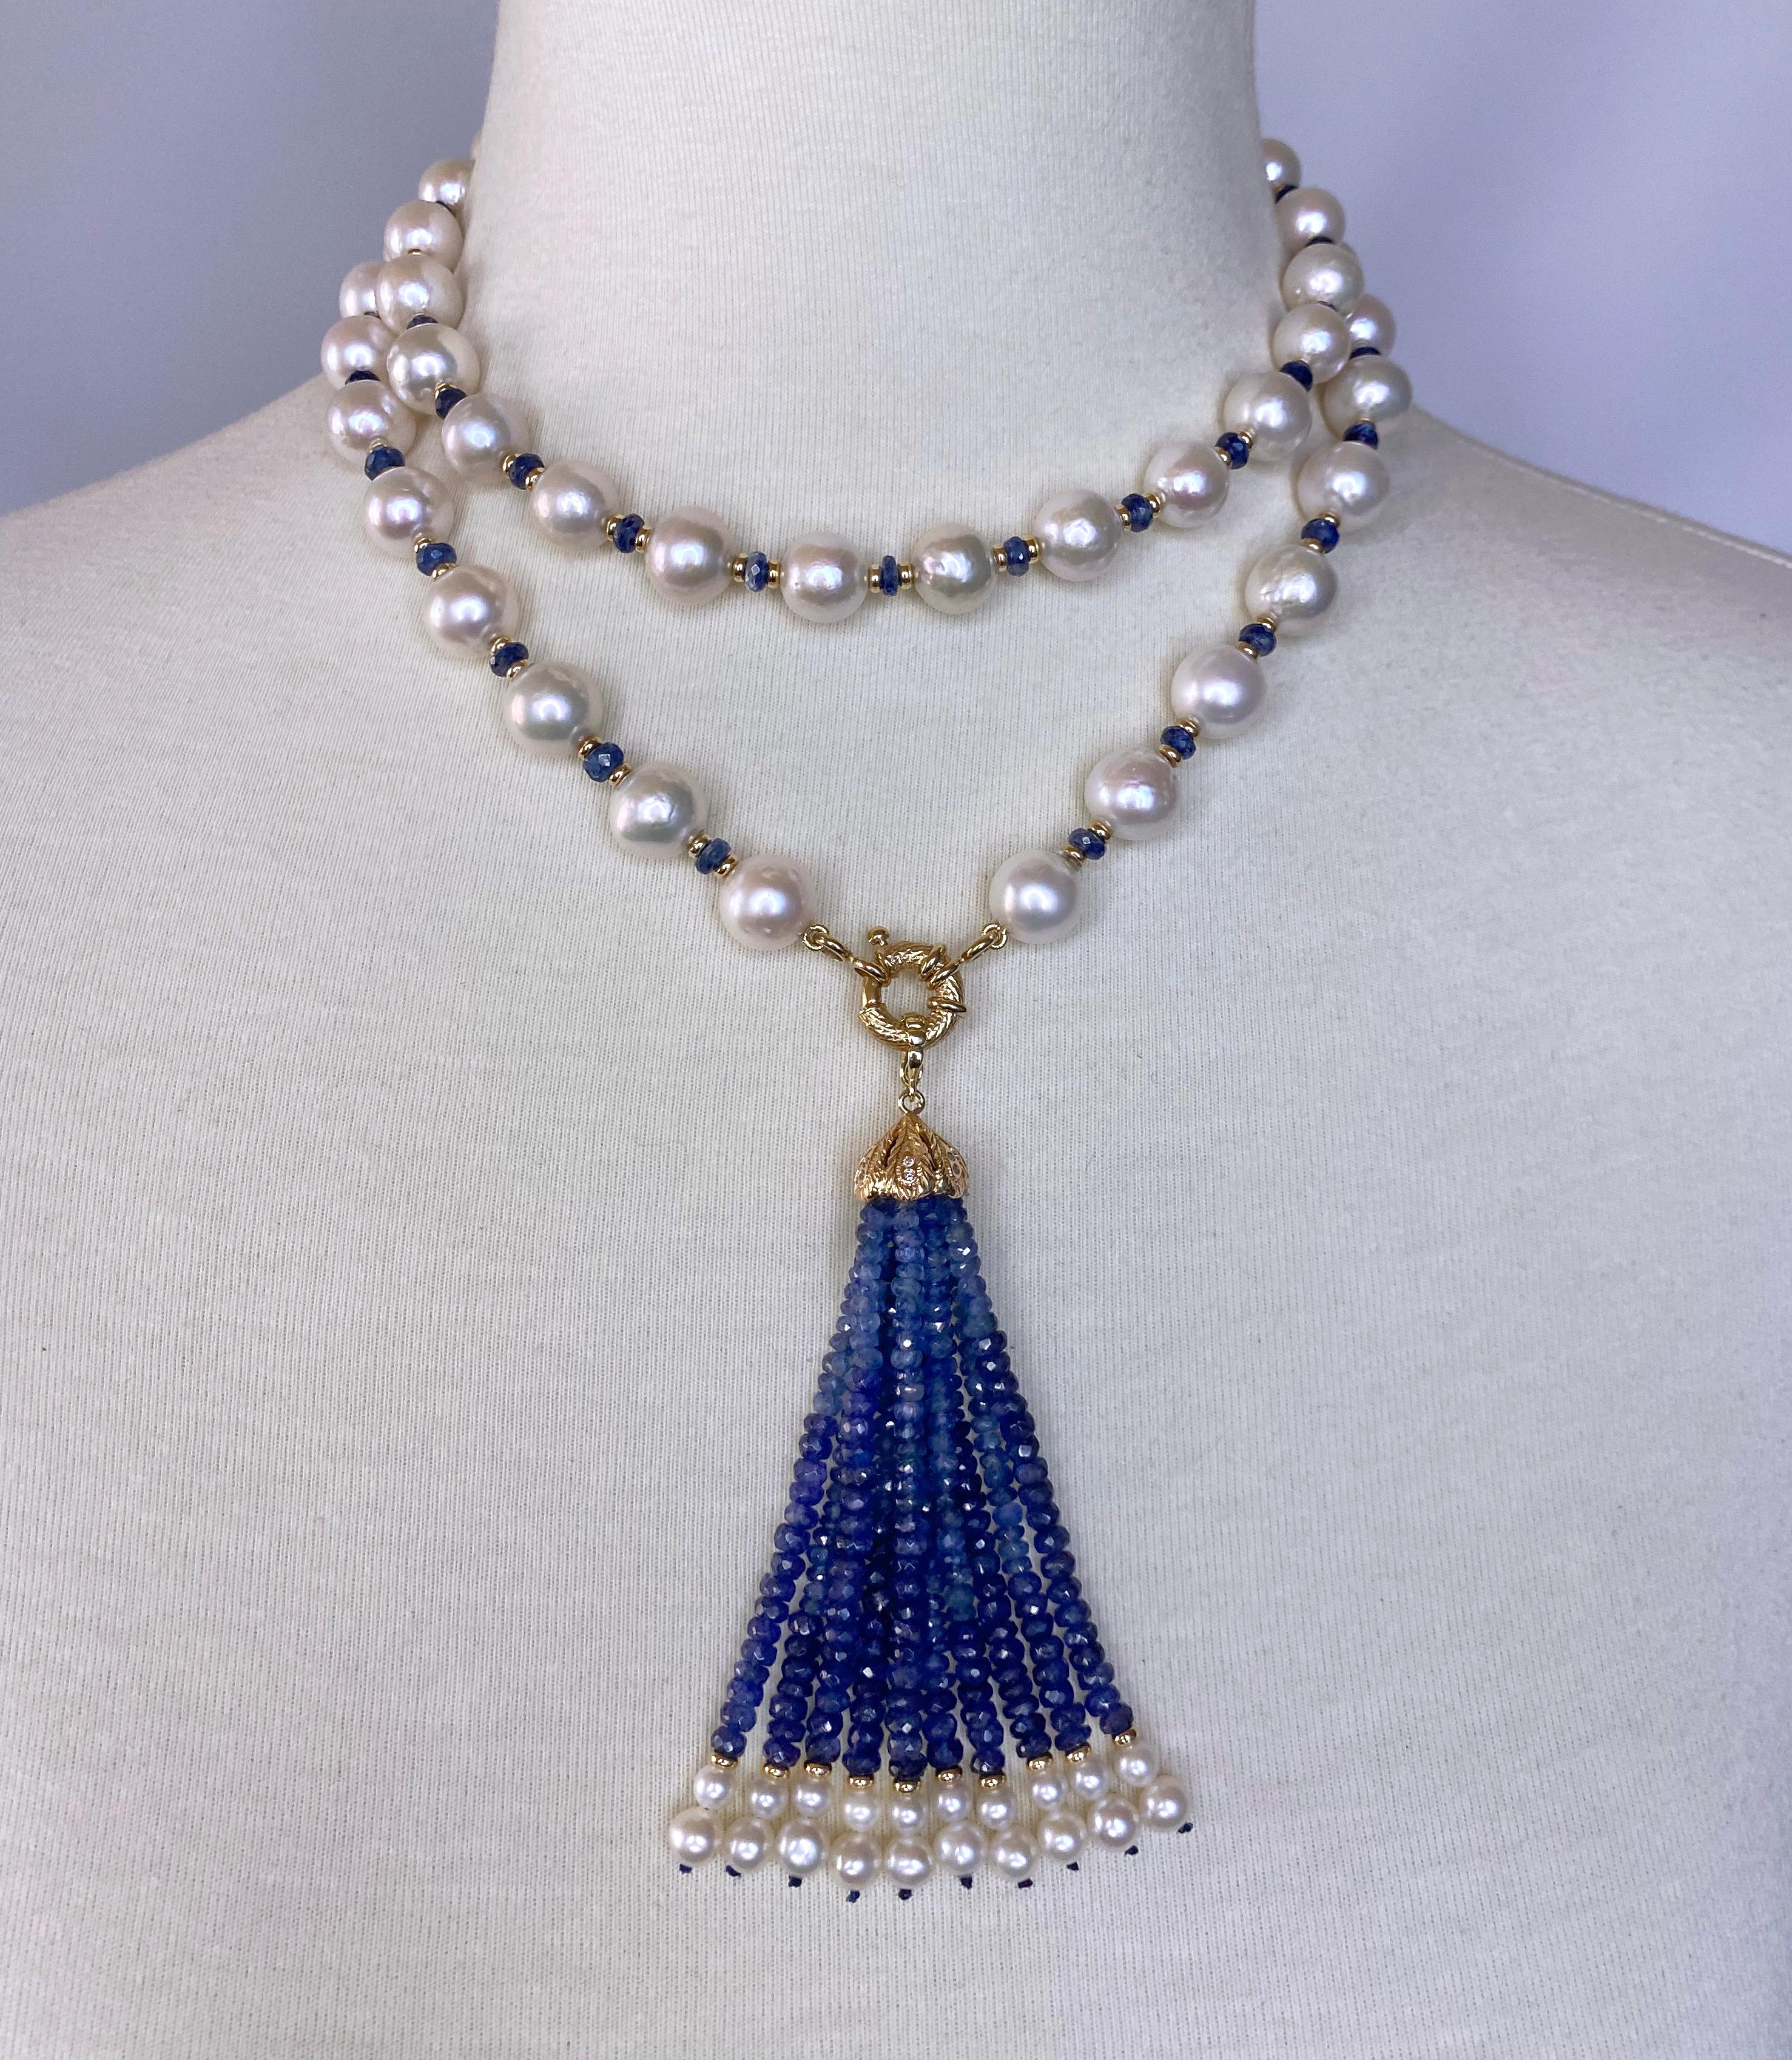 Gorgeous Lariat / Sautoir Hand gewebt von Marina J. Dieses Stück ist mit allen gezüchteten weißen Perlen, die einen schönen schillernden Glanz, facettierten blauen Saphiren und solide 14k Gelbgold Erkenntnisse. Aufgrund ihrer pigmentierten und doch